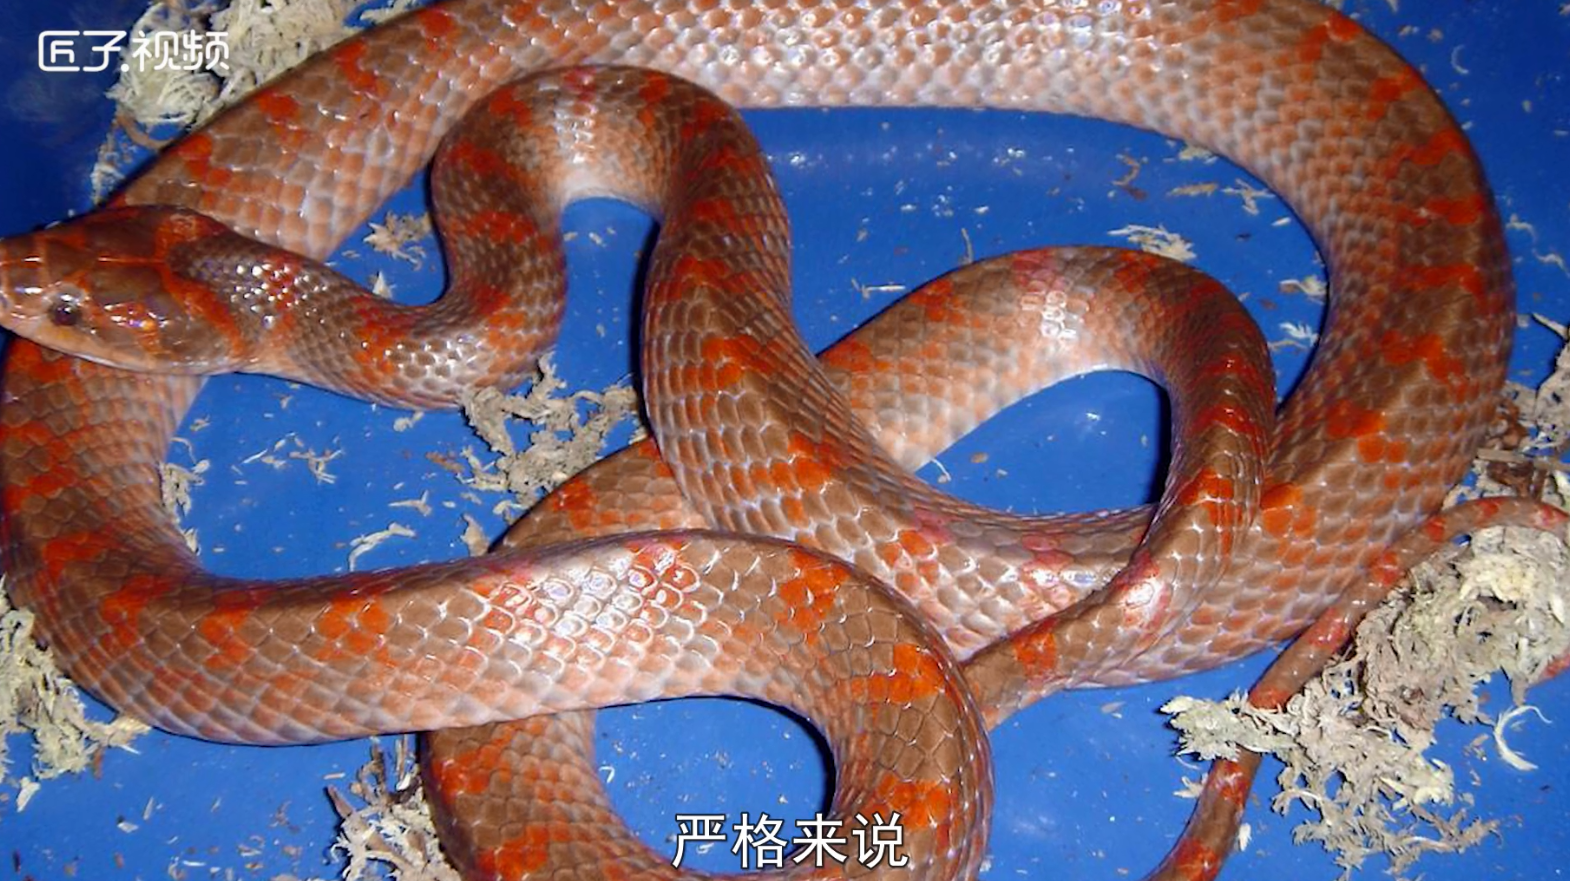 十五种蛇系列之7种五步蛇、竹叶青蛇、王锦蛇、黄金蟒黑眉锦蛇等